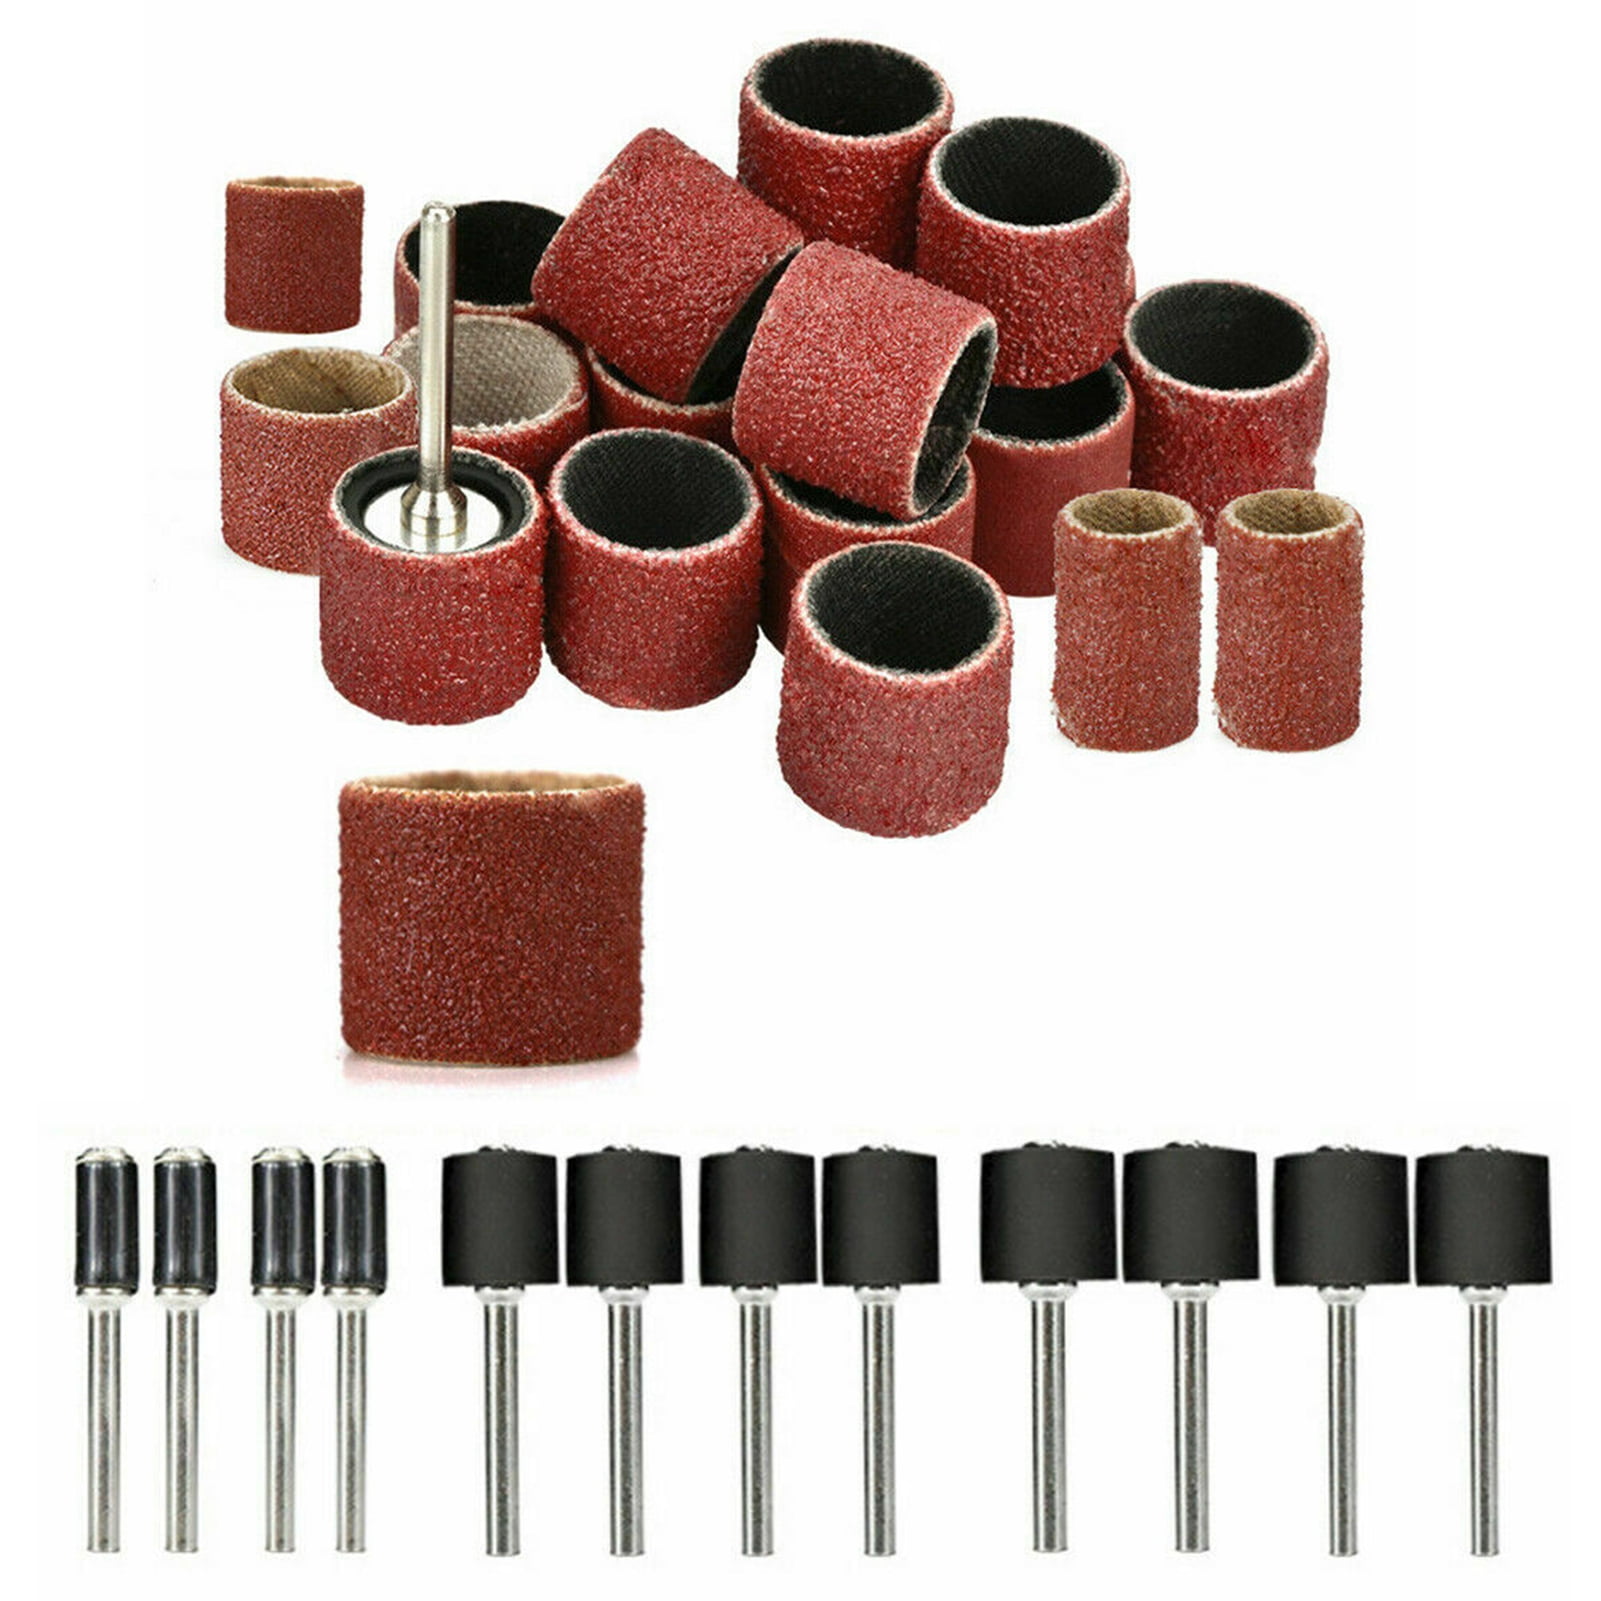 252/338X Sanding Drum Kit Nail Drill Bit Polished Dremel Accessories Rotary Tool 